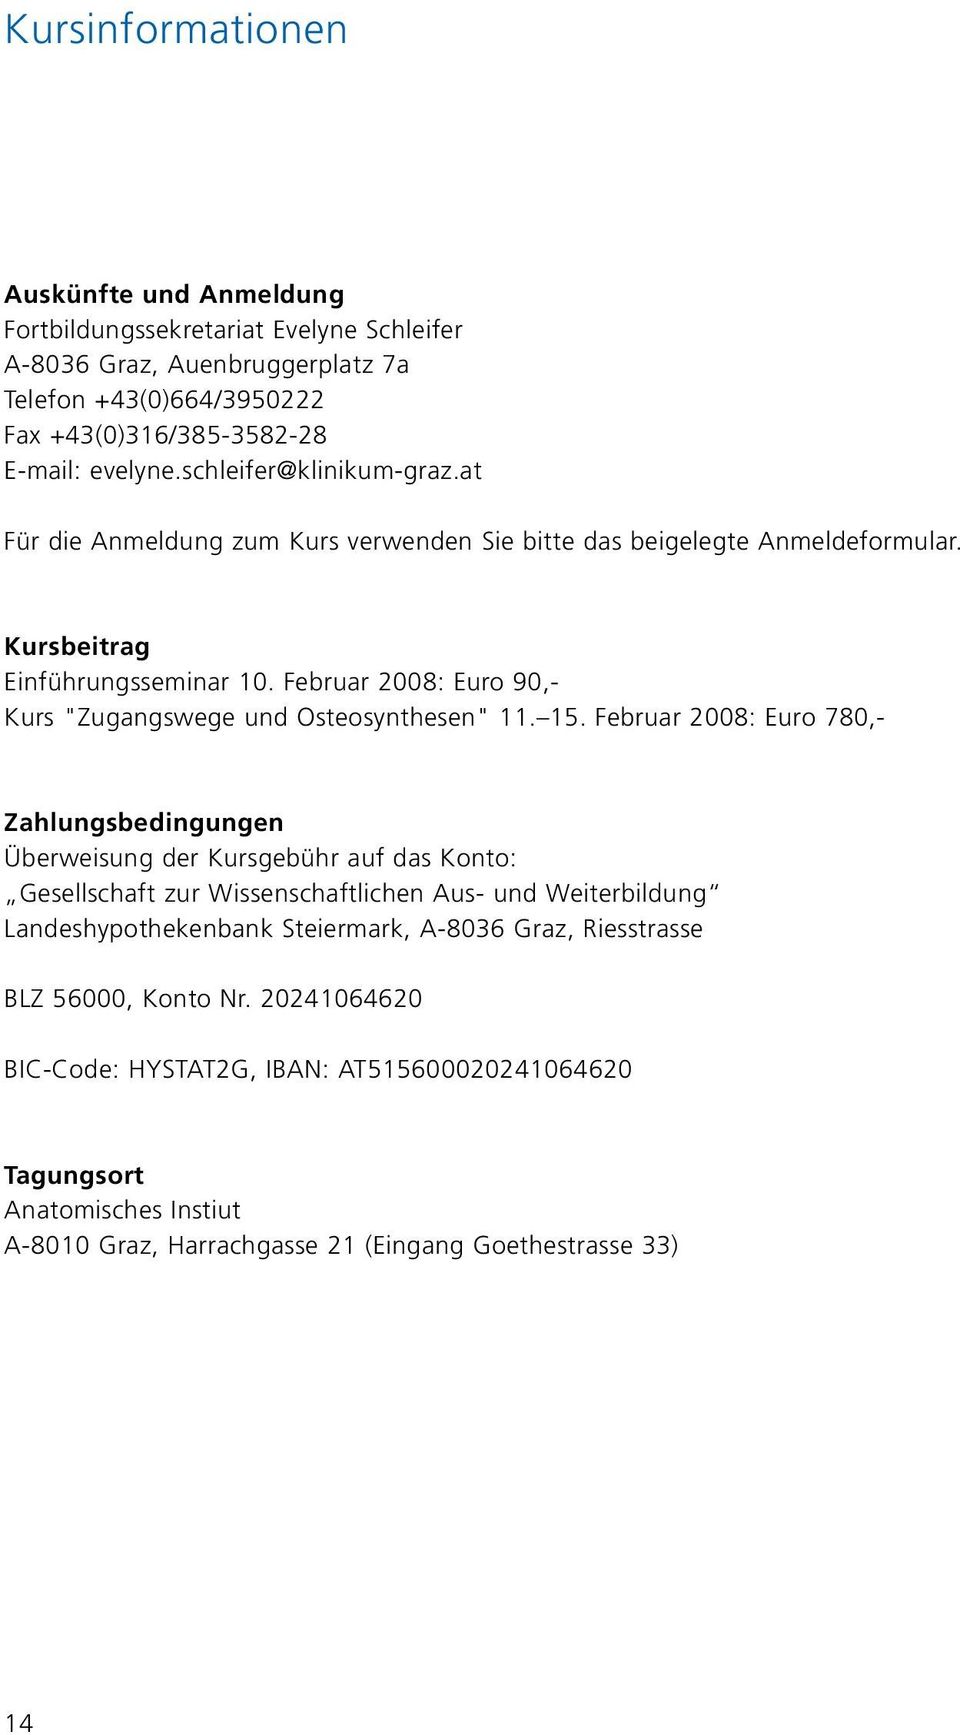 Februar 2008: Euro 90,- Kurs "Zugangswege und Osteosynthesen" 11. 15.